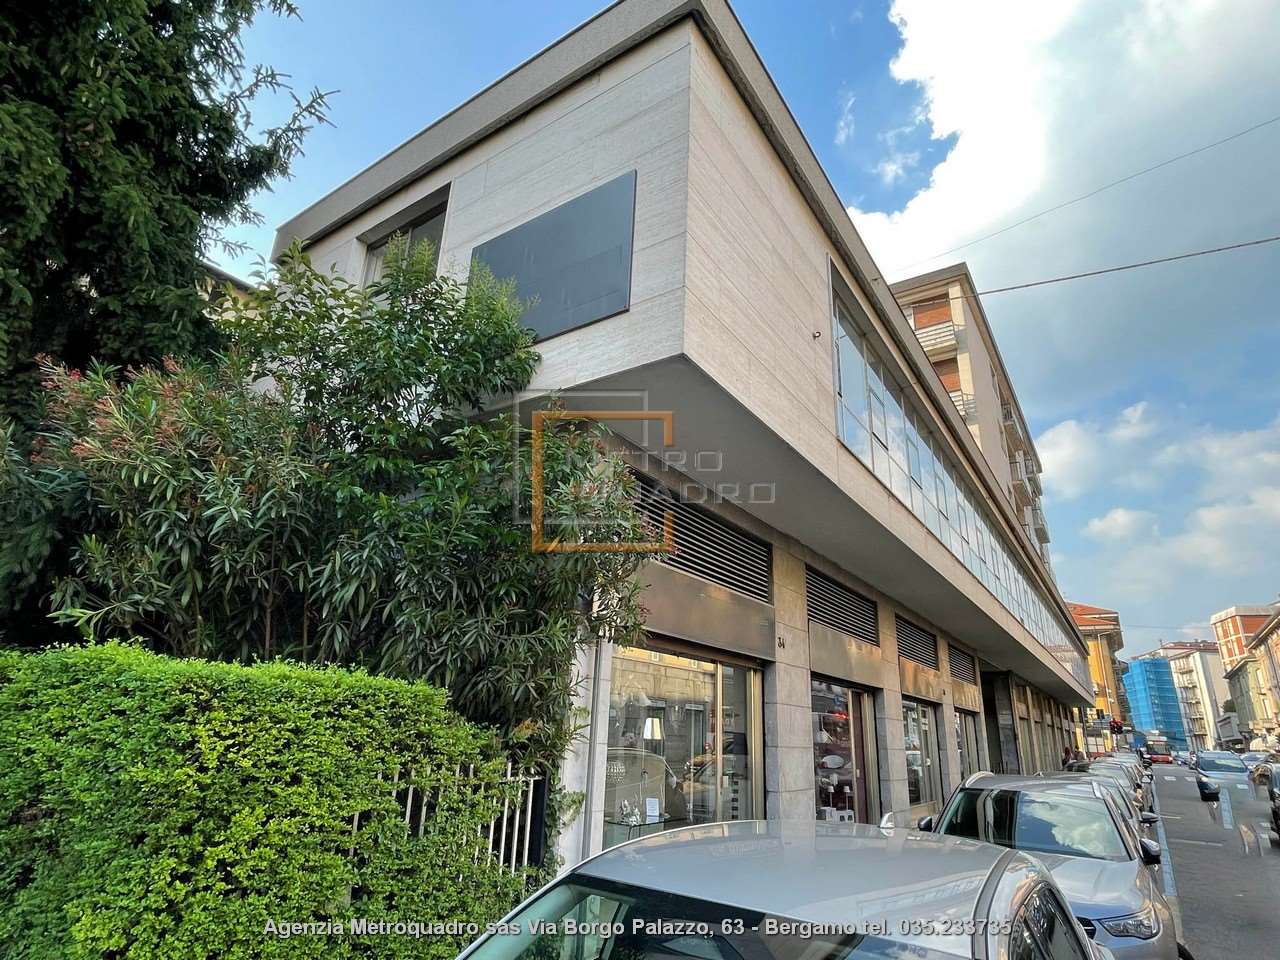 Vendita Negozio Commerciale/Industriale Bergamo 459654